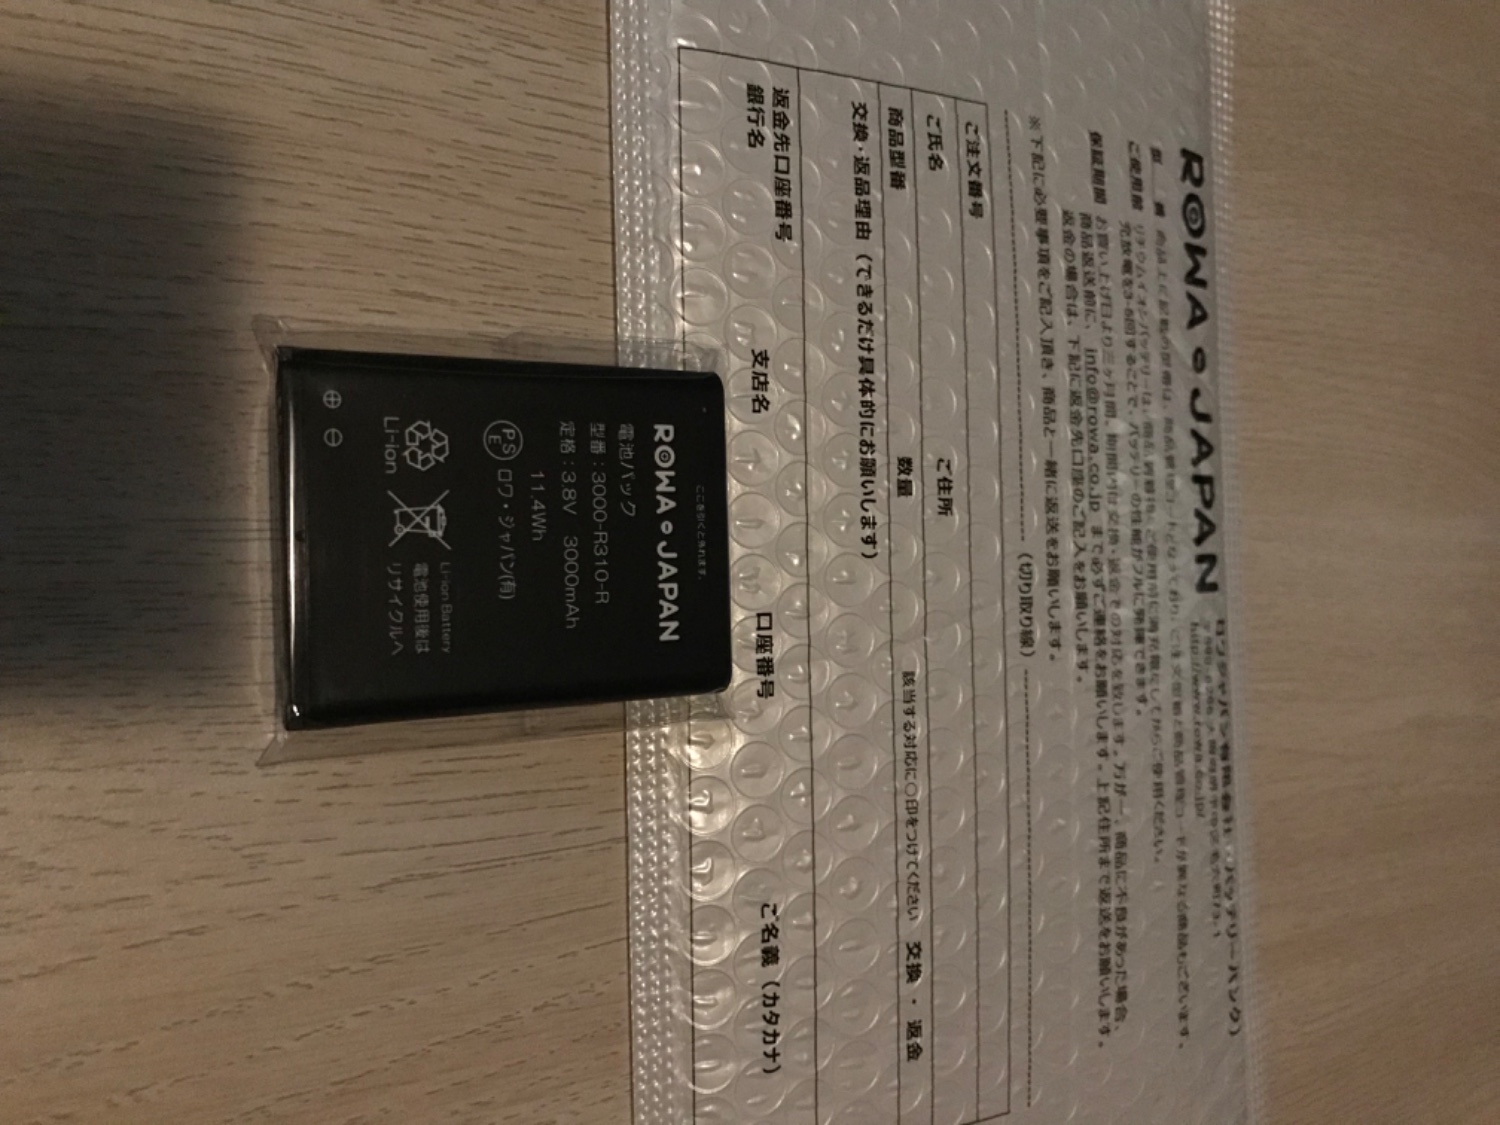 モバイル対応 ポケットWi-Fi R310 専用 3000-R310 互換 電池パック ロワジャパン